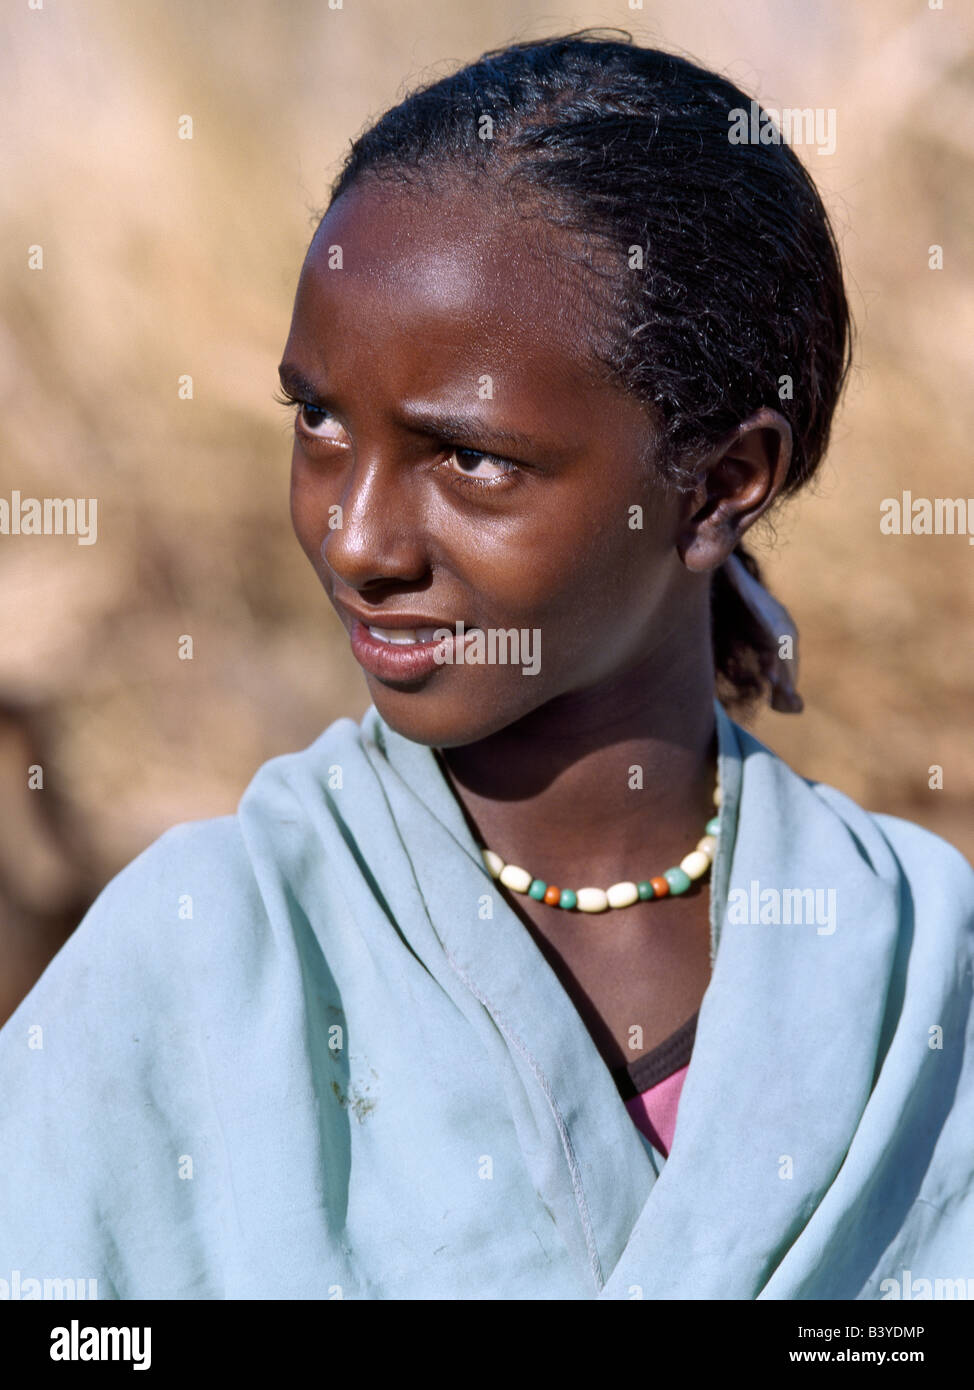 sudan-fourth-cataract-a-pretty-young-nubian-girl-B3YDMP.jpg